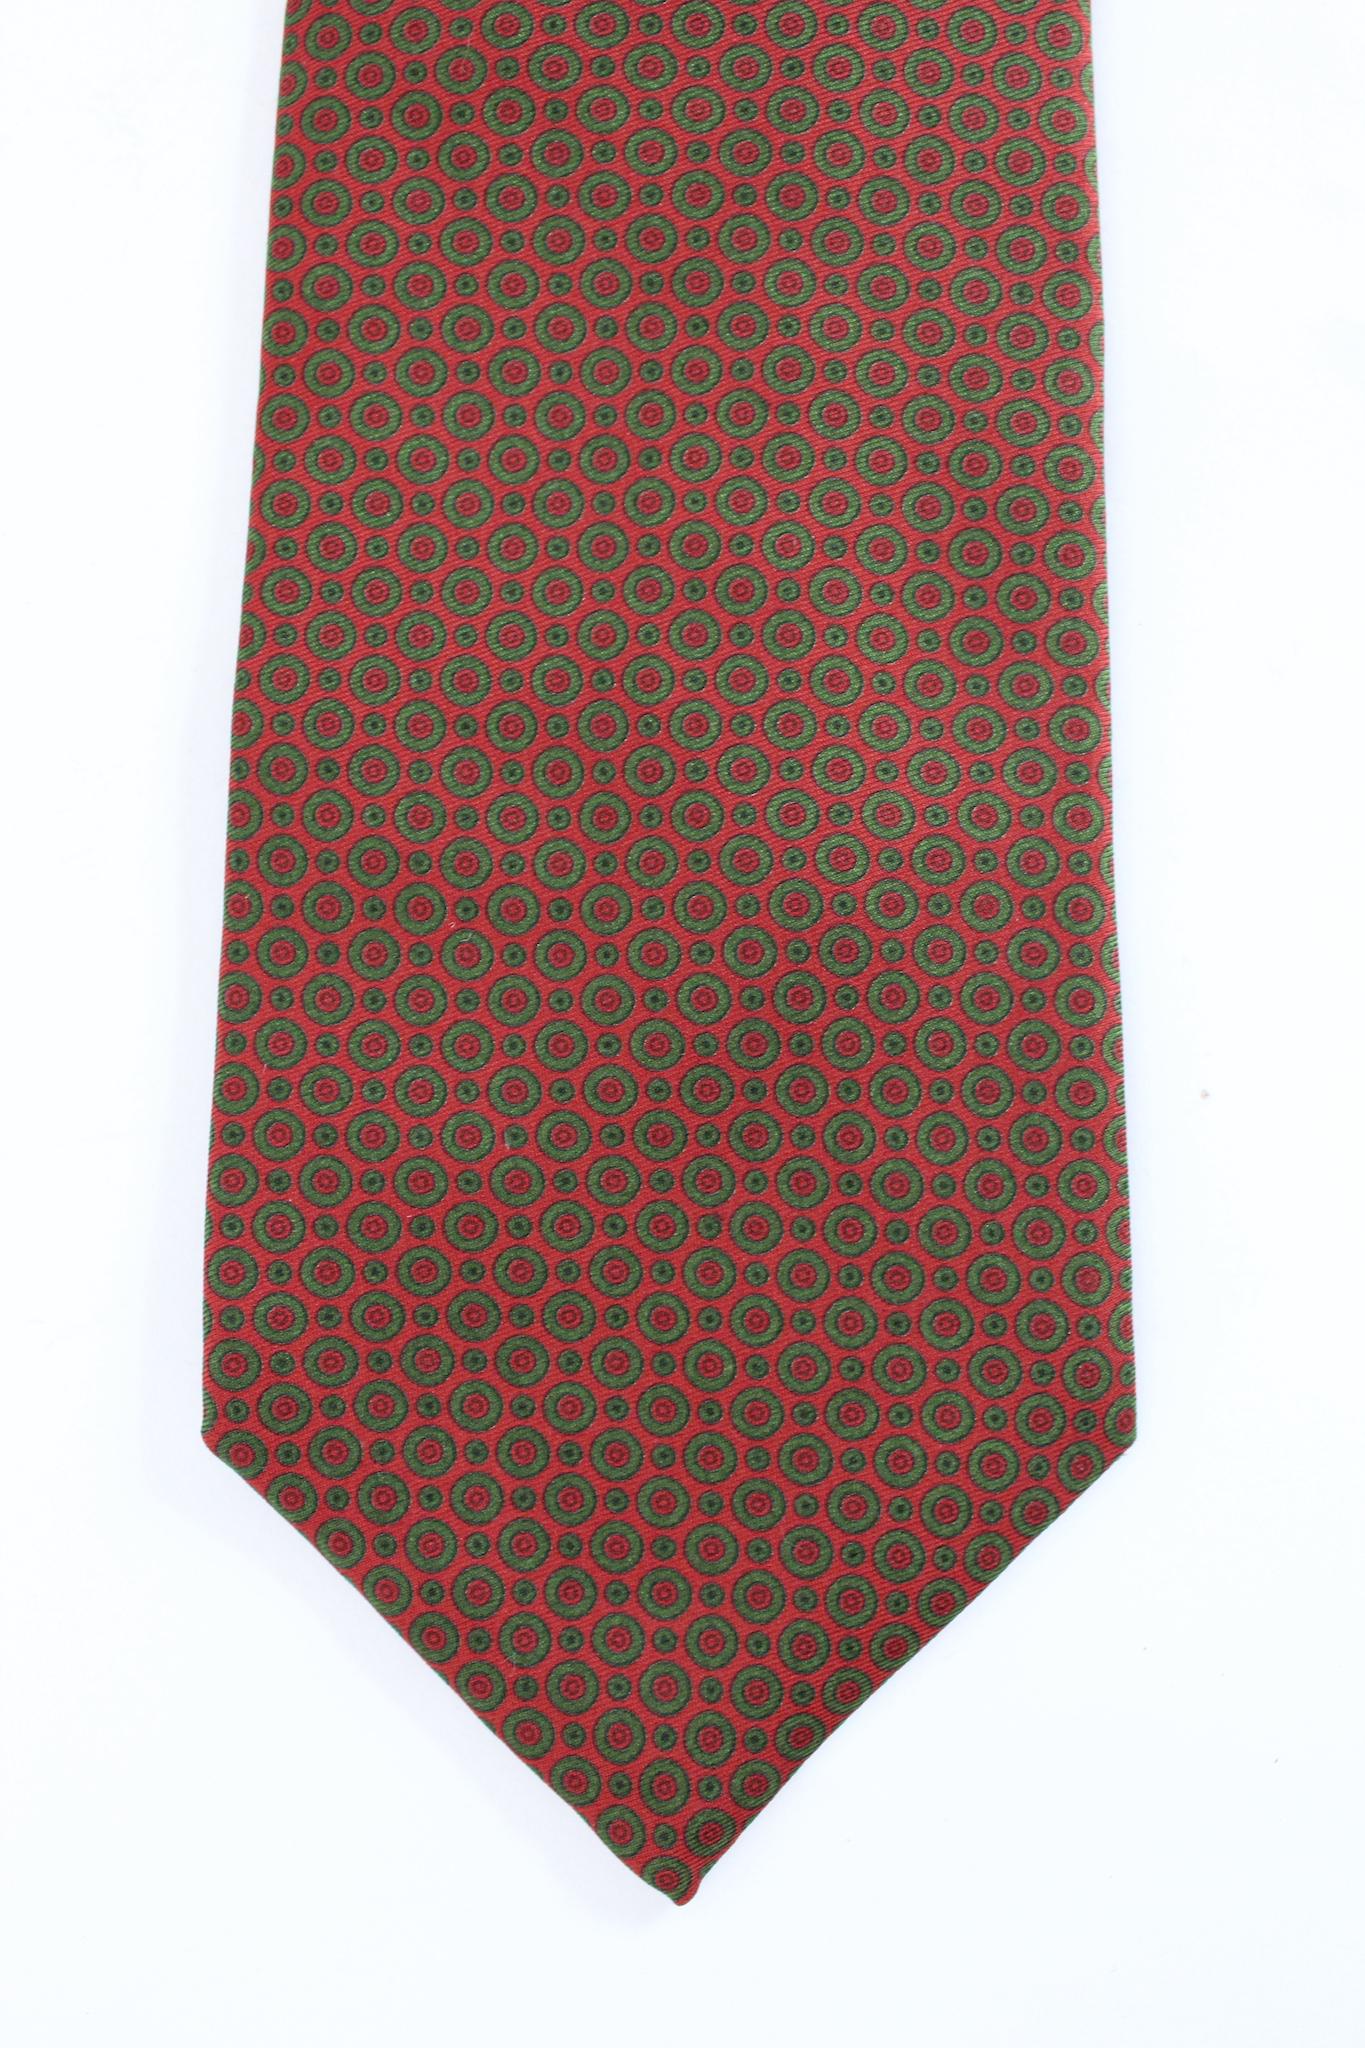 Etro 90er Jahre Vintage Krawatte mit Tupfen. Braune und grüne Farbe, 100% Seide. Hergestellt in Italien.

Länge: 142 cm
Breite: 9 cm